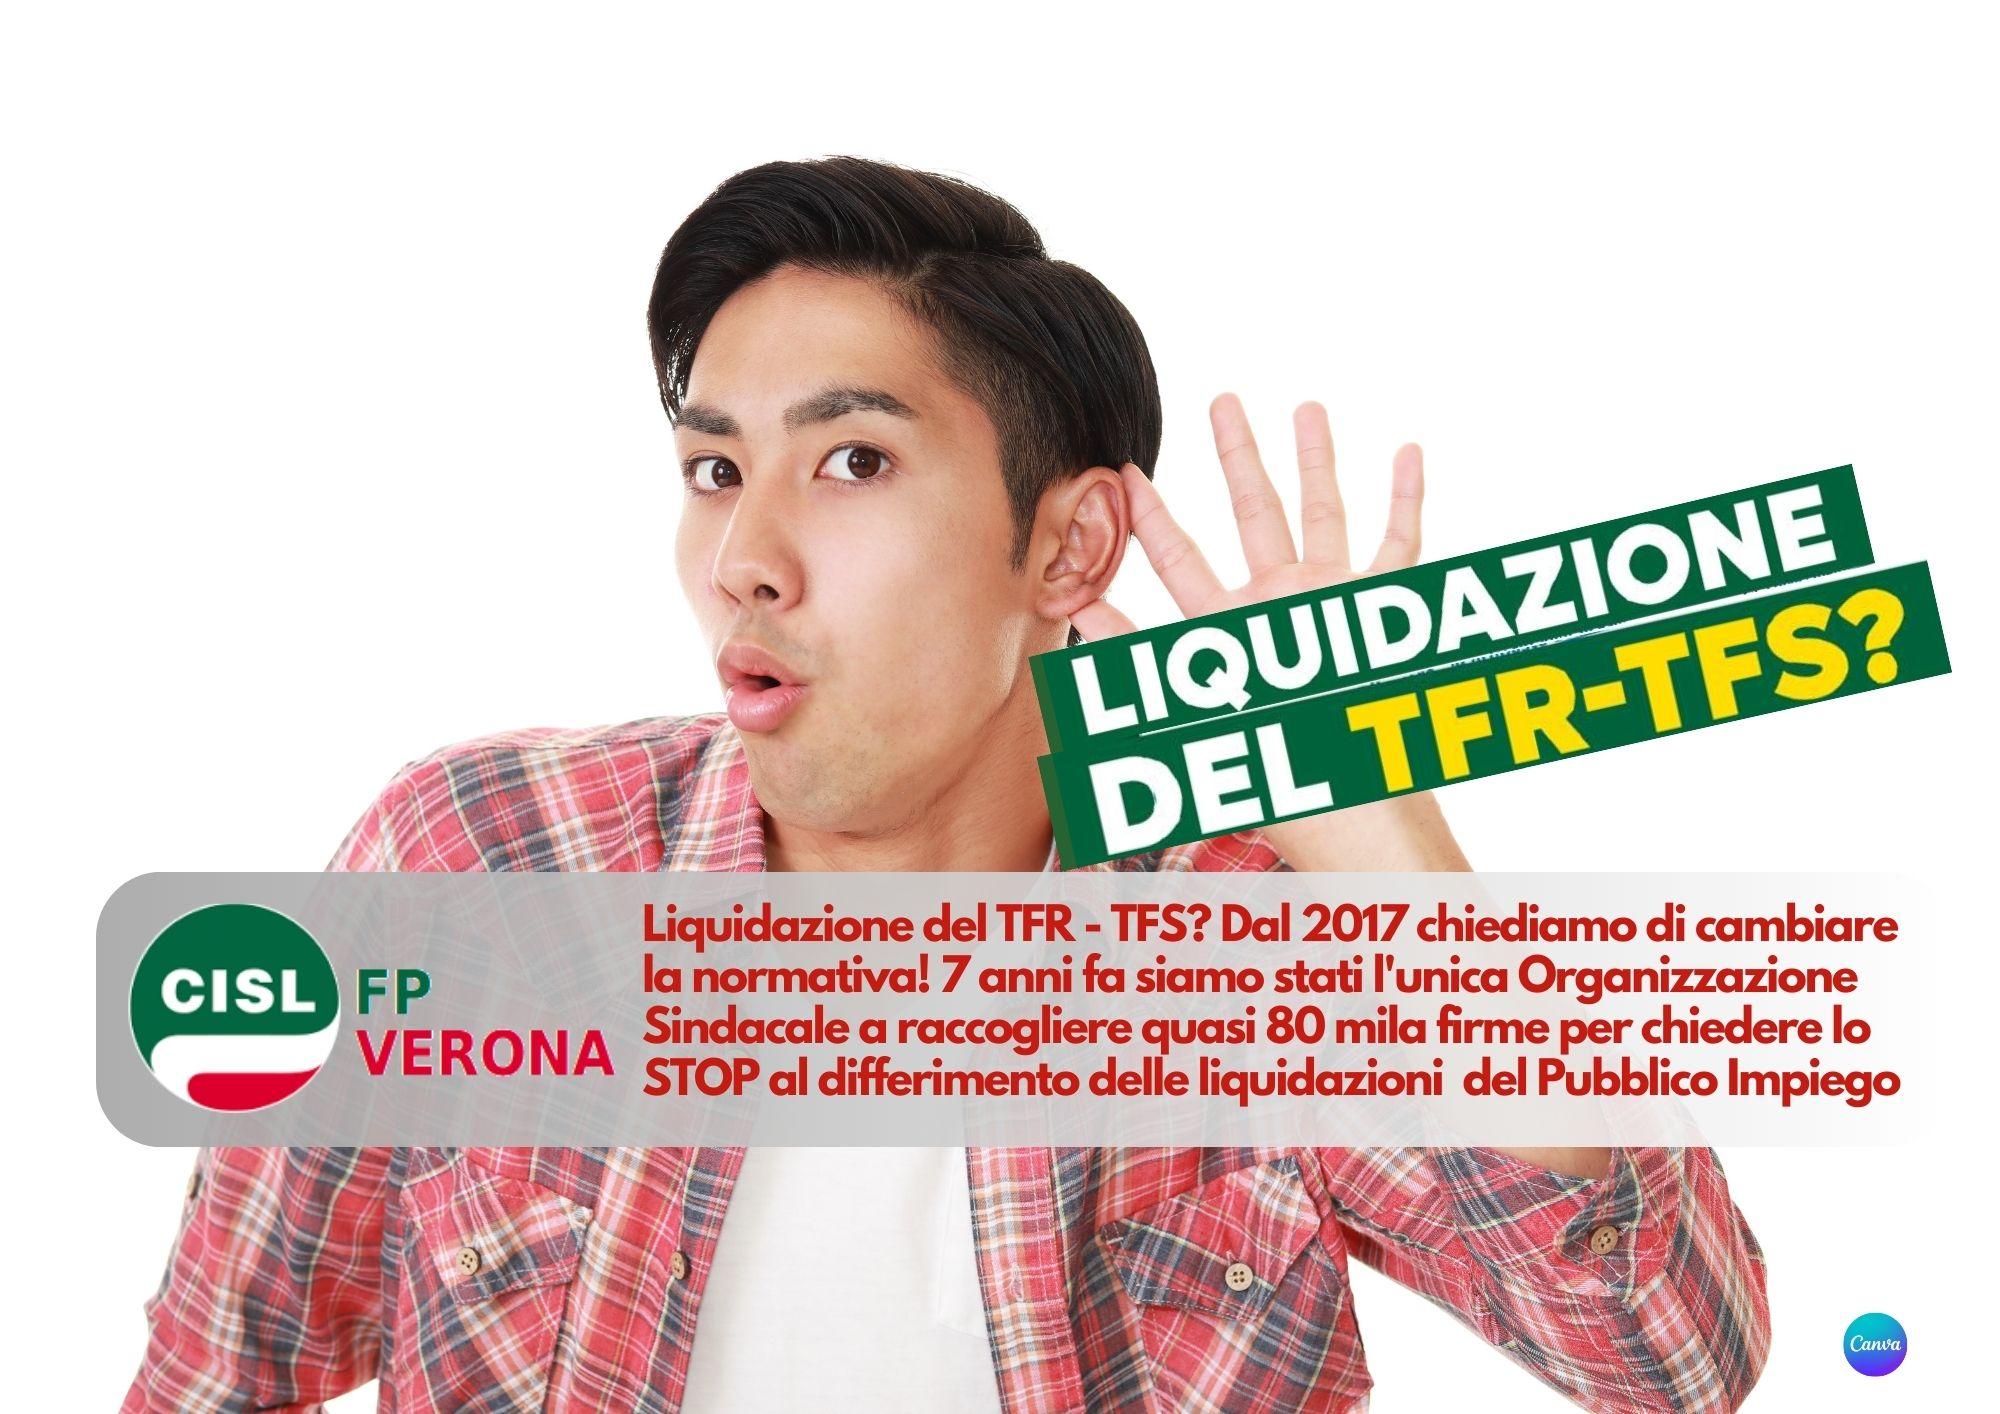 CISL FP Verona. Liquidazione del TFR - TFS? Dal 2017 chiediamo di cambiare la normativa!